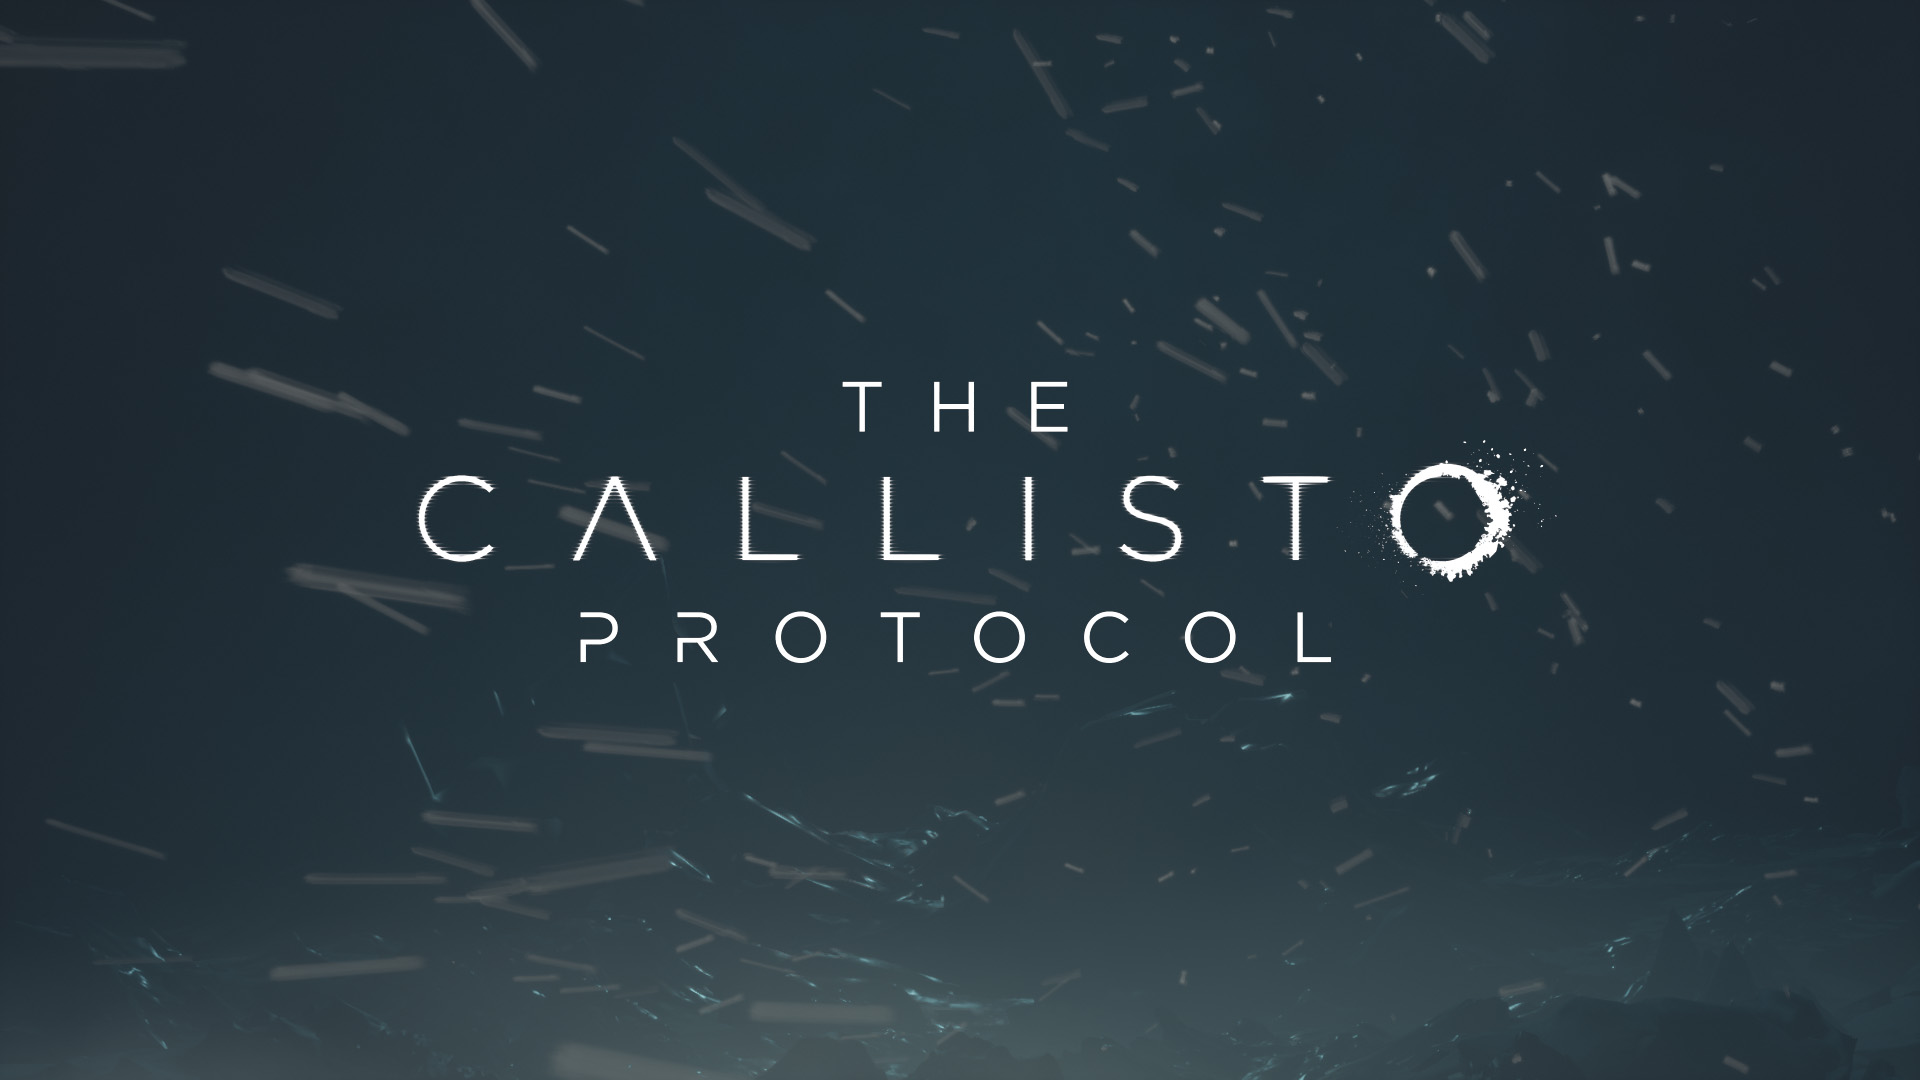 The Callisto Protocol terá 27 conquistas/troféus - confira a lista